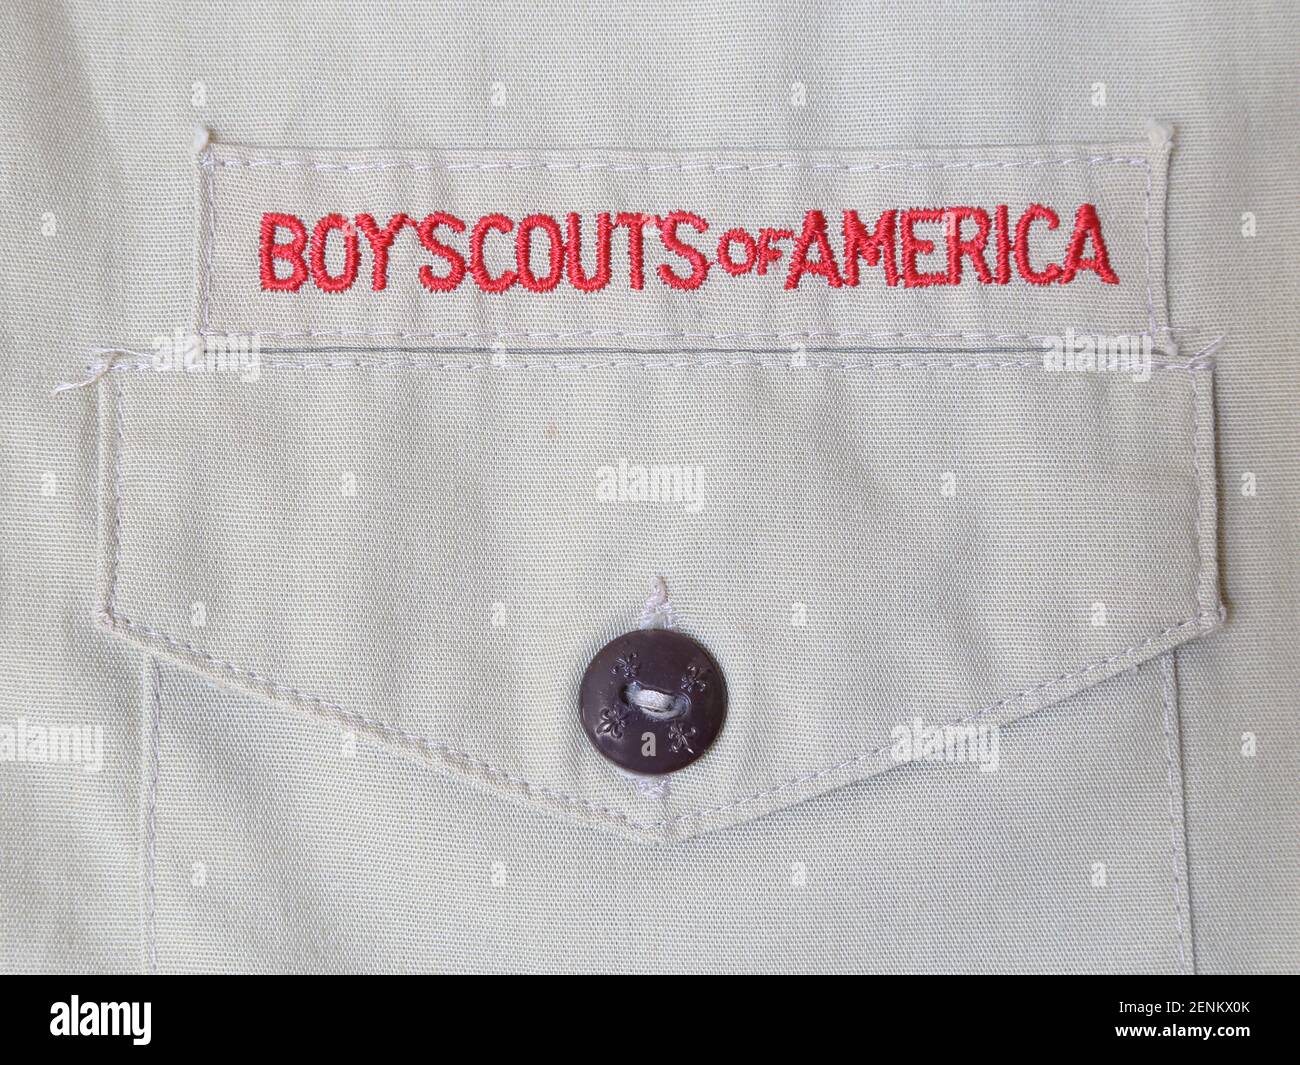 Los Angeles, CA / USA - 17. Feb. 2021: Ein Boy Scouts of America Textpatch ist auf einem Uniform-Shirt aus nächster Nähe zu sehen. Nur für redaktionelle Zwecke. Stockfoto